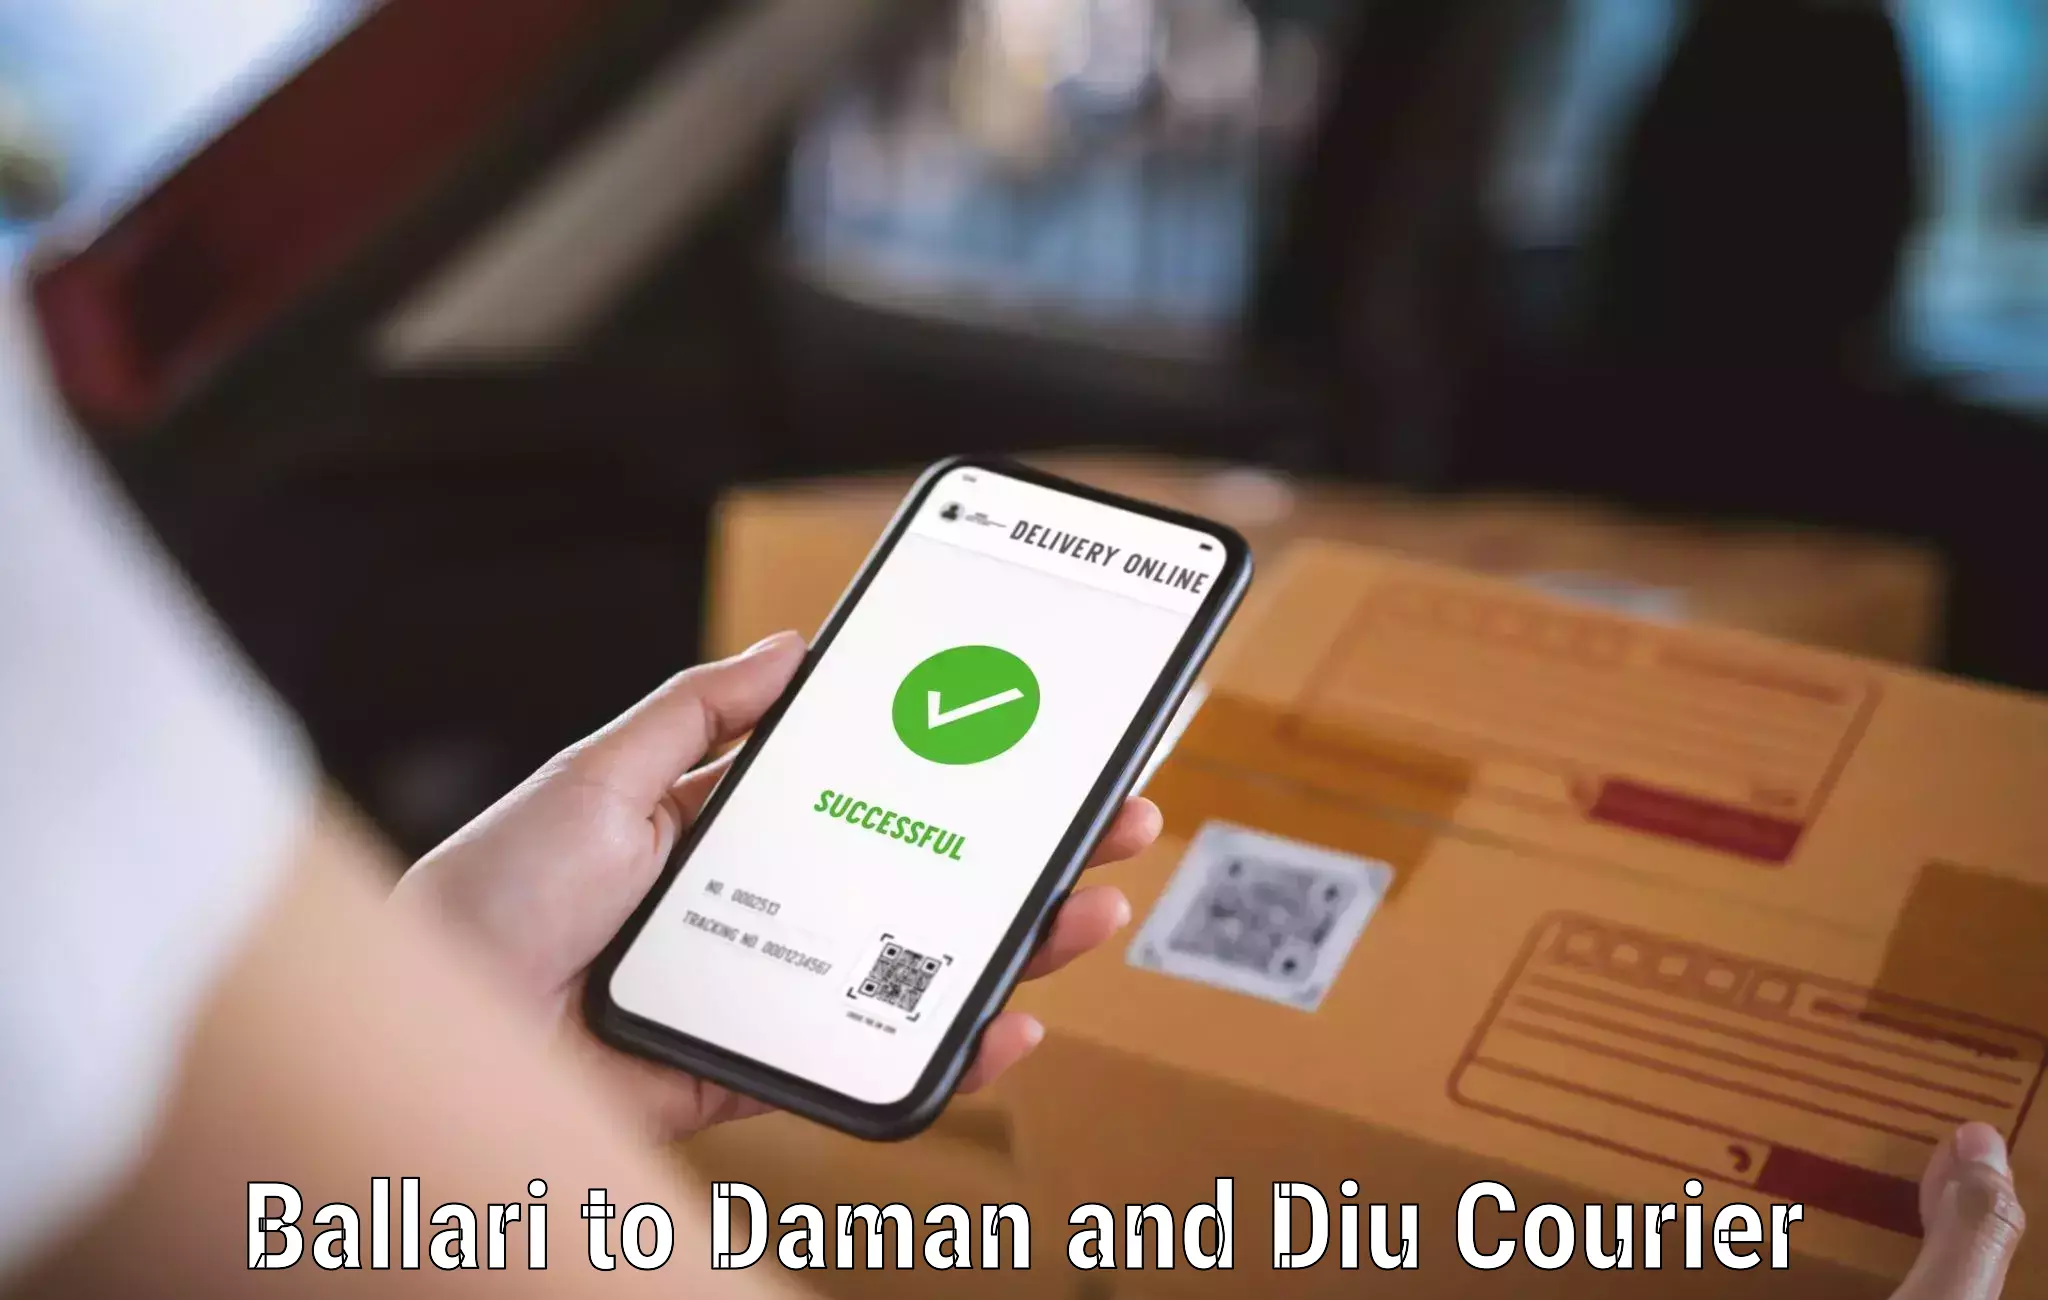 Weekend courier service Ballari to Daman and Diu